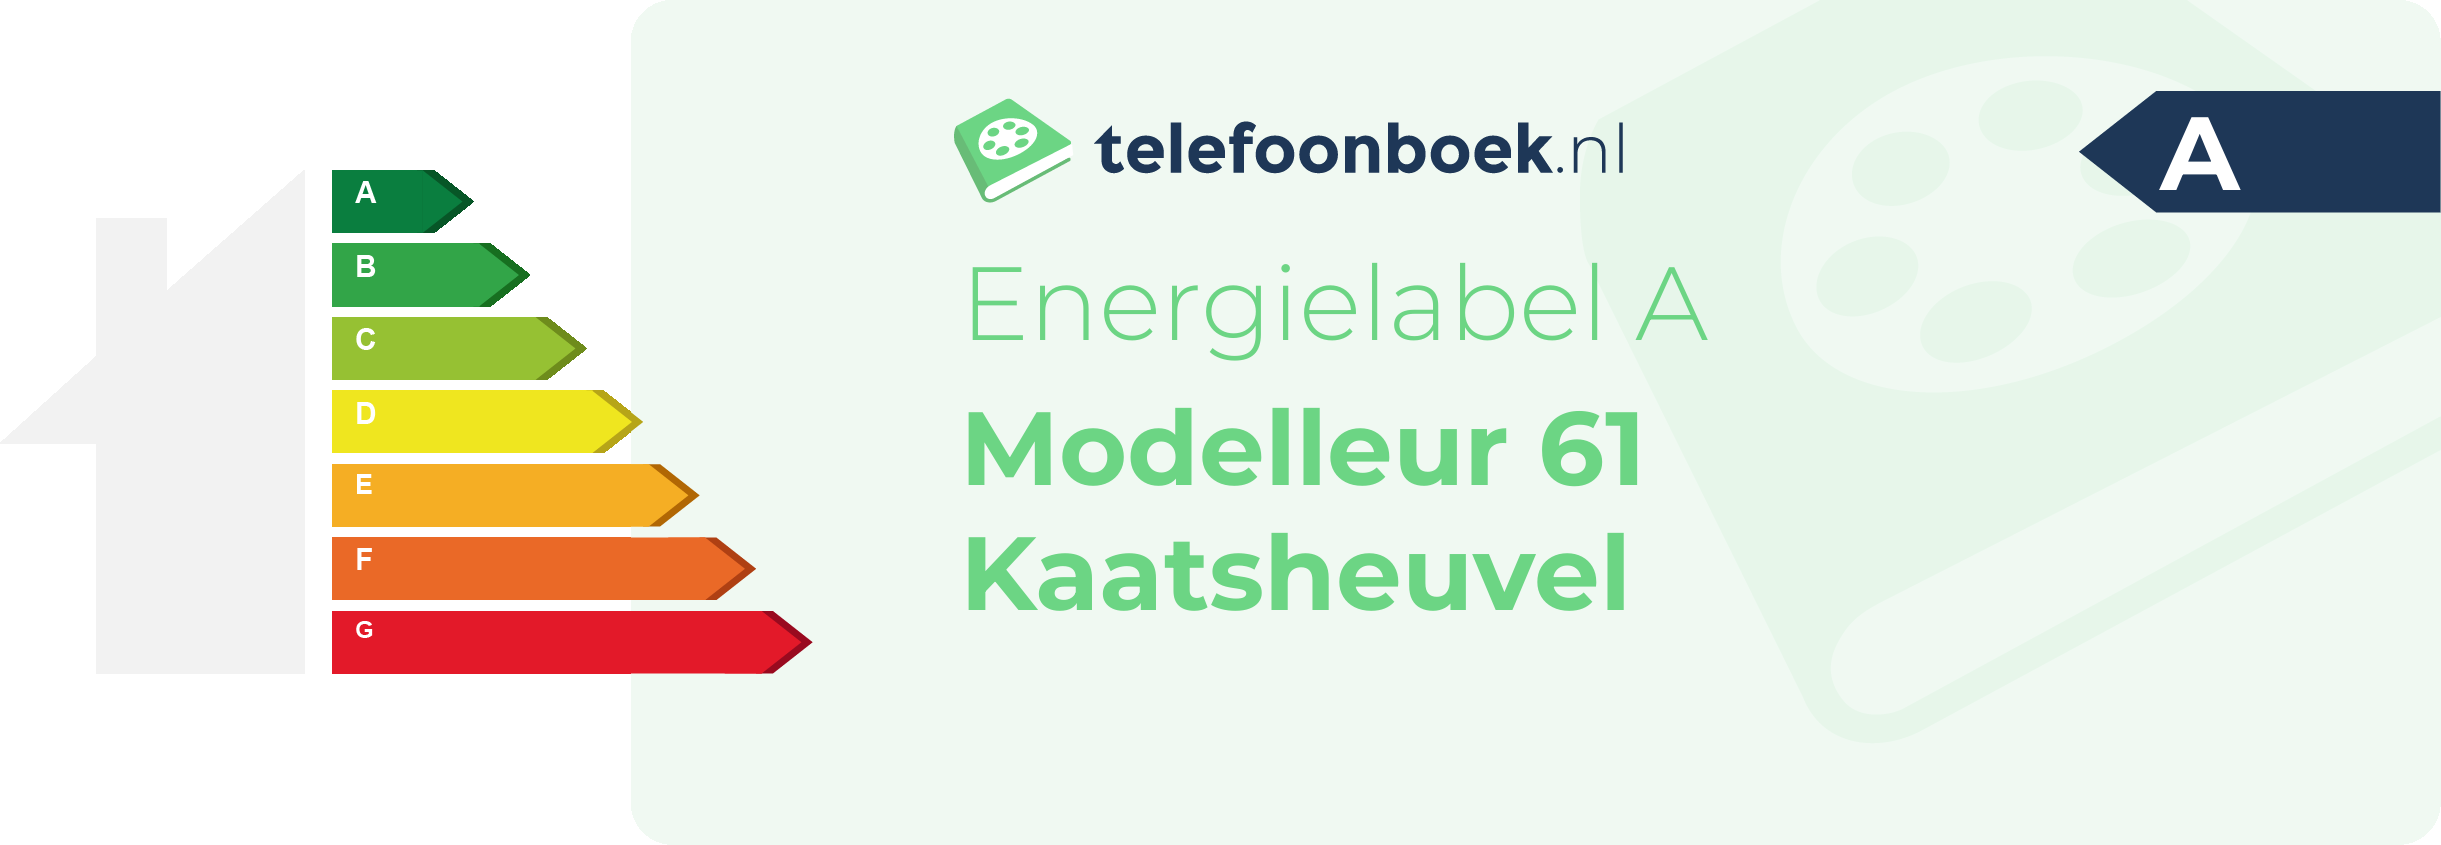 Energielabel Modelleur 61 Kaatsheuvel